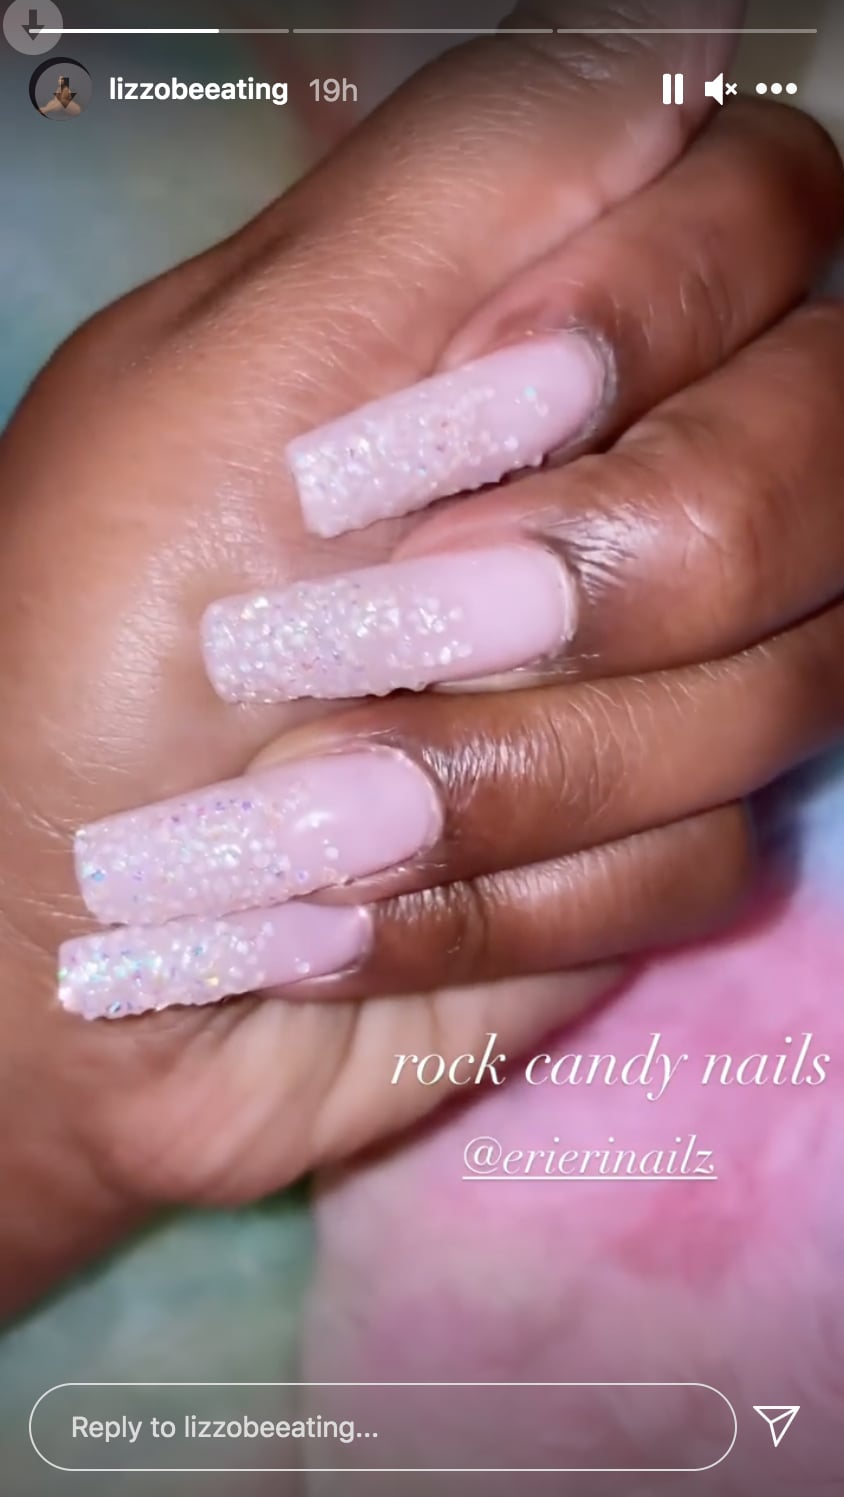 Short Pink Rhinestone Nails – Kandy Co Nails